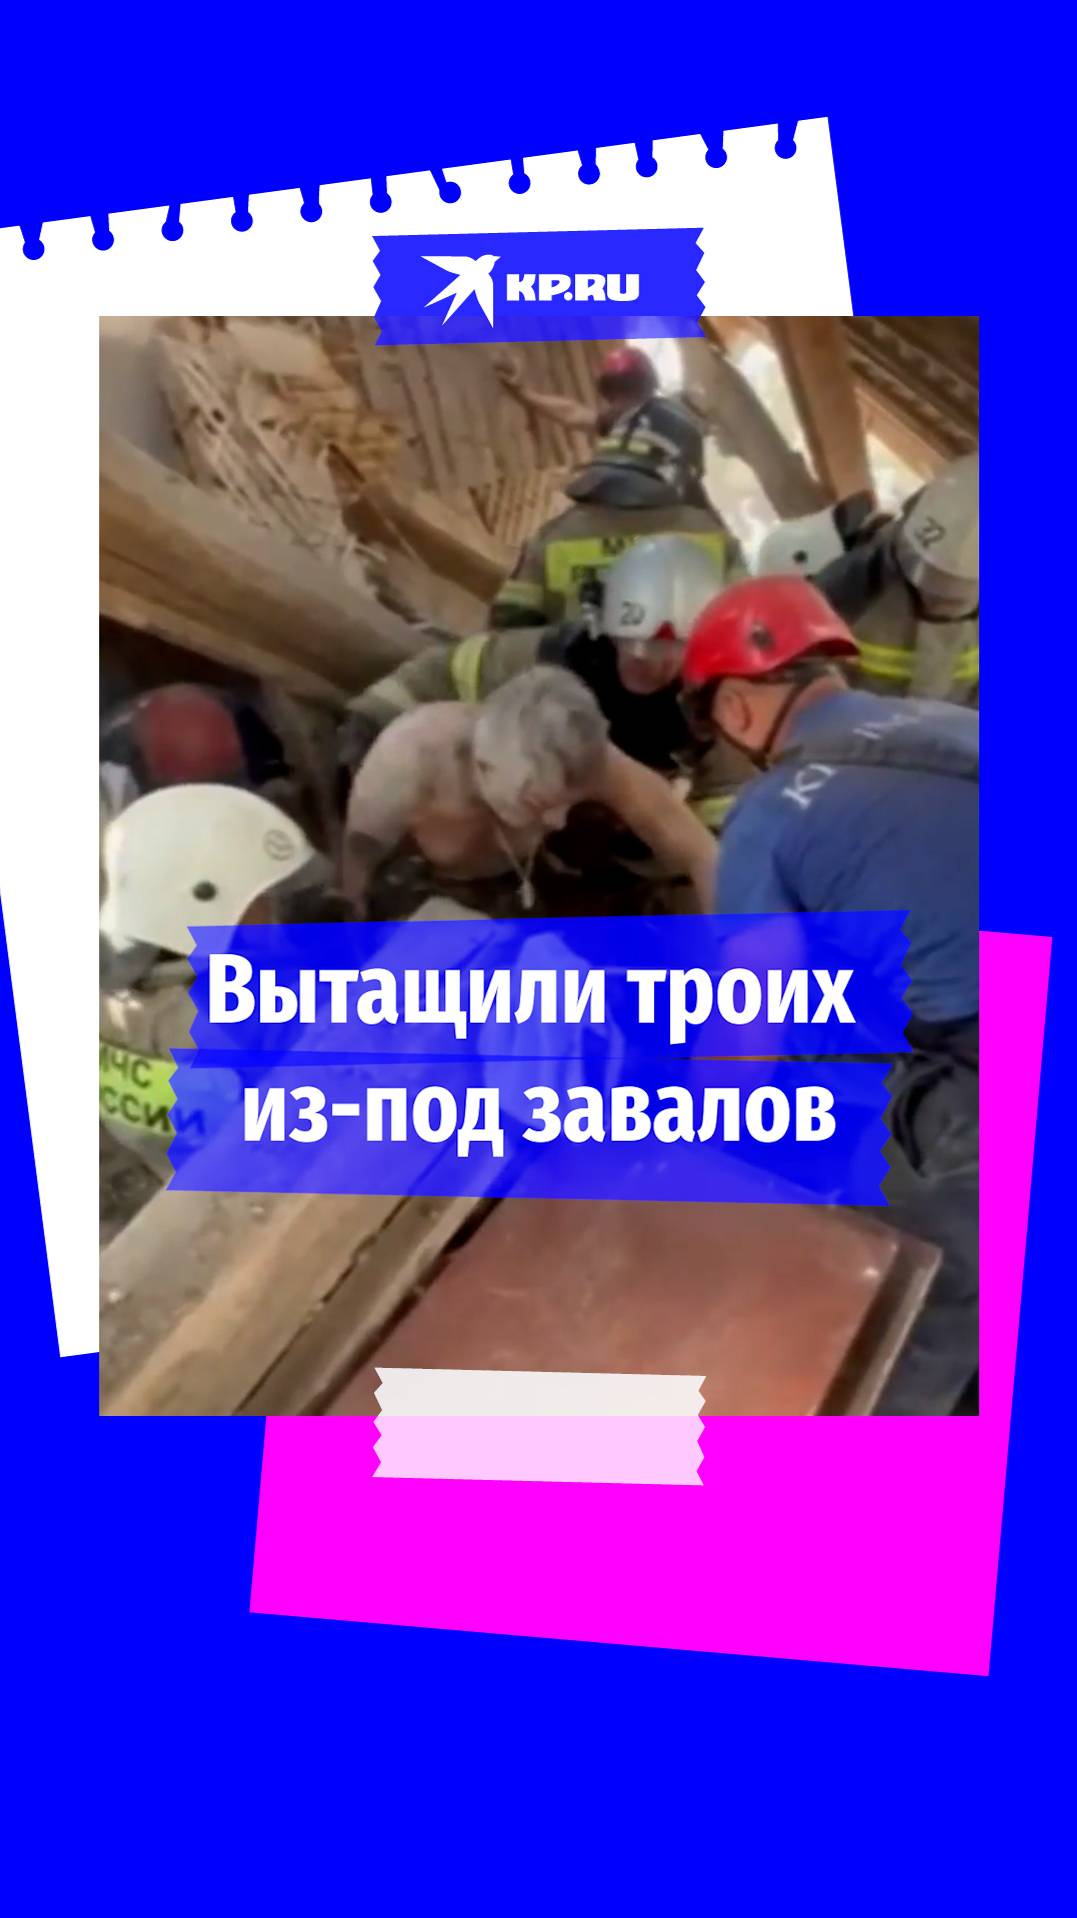 В Крыму достали троих из под завалов после взрыва газа